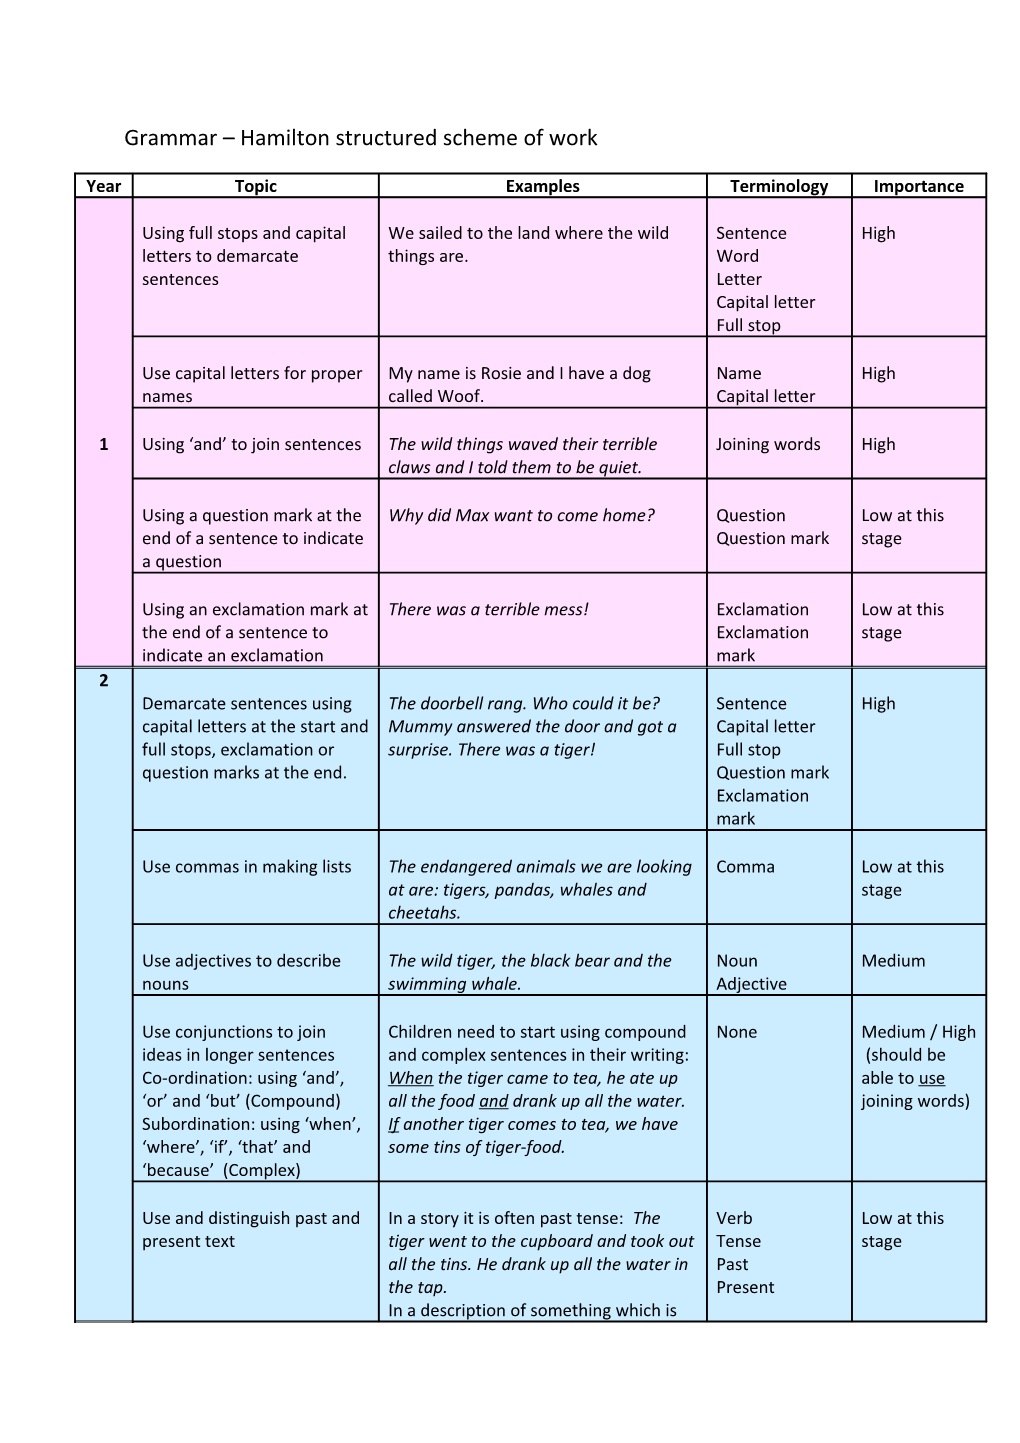 Grammar Hamilton Structured Scheme of Work